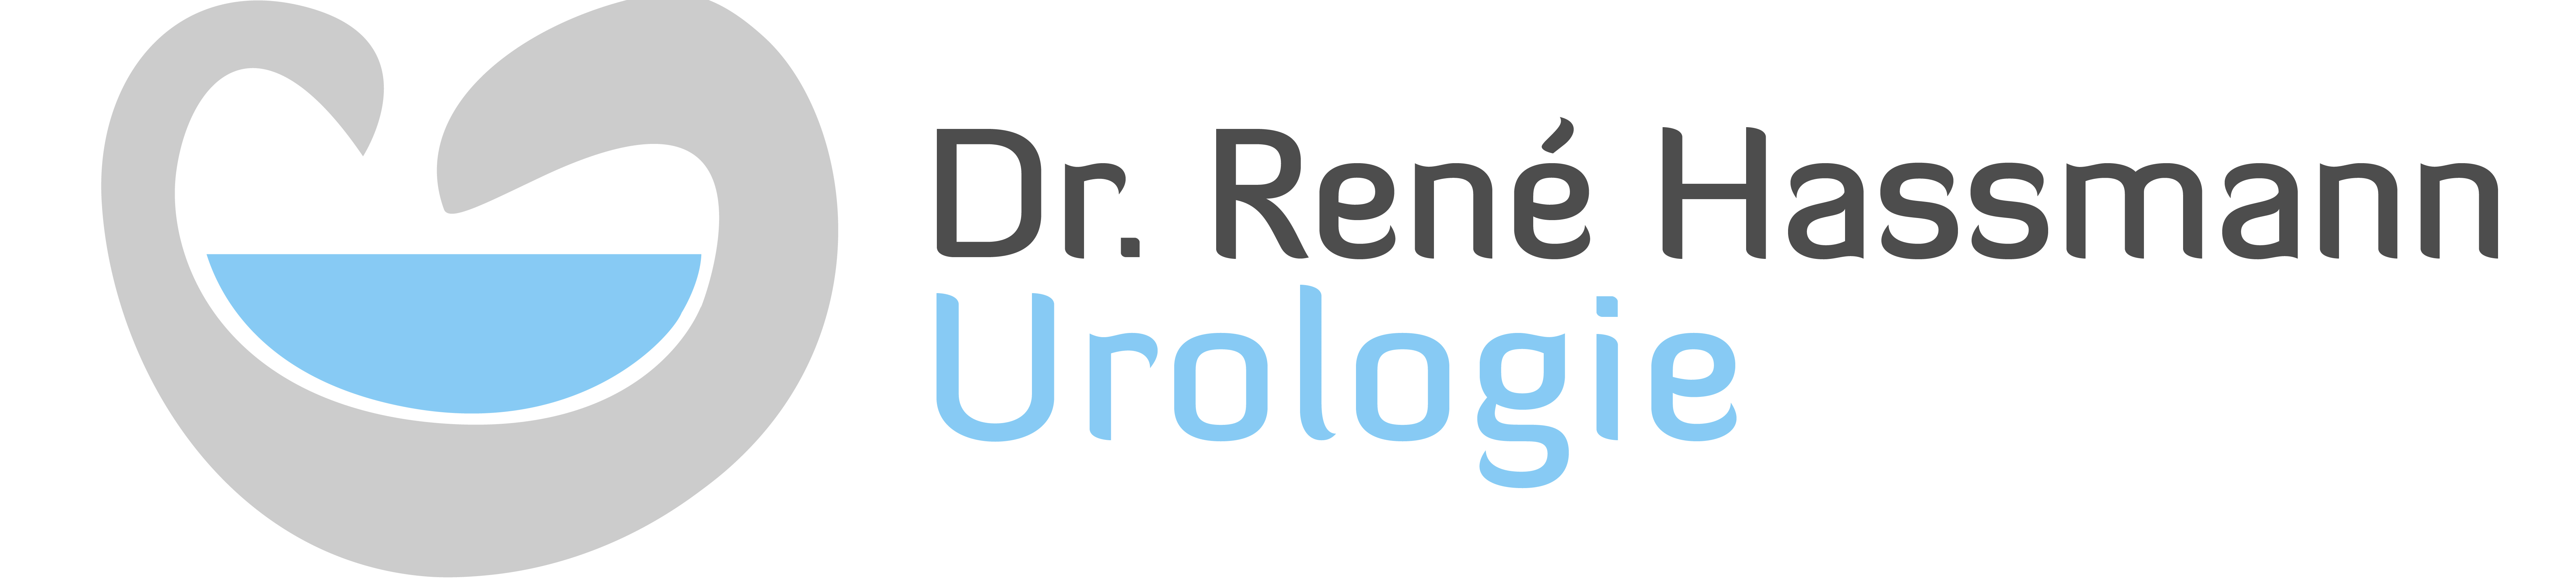 Urologie Dr. René Hassmann